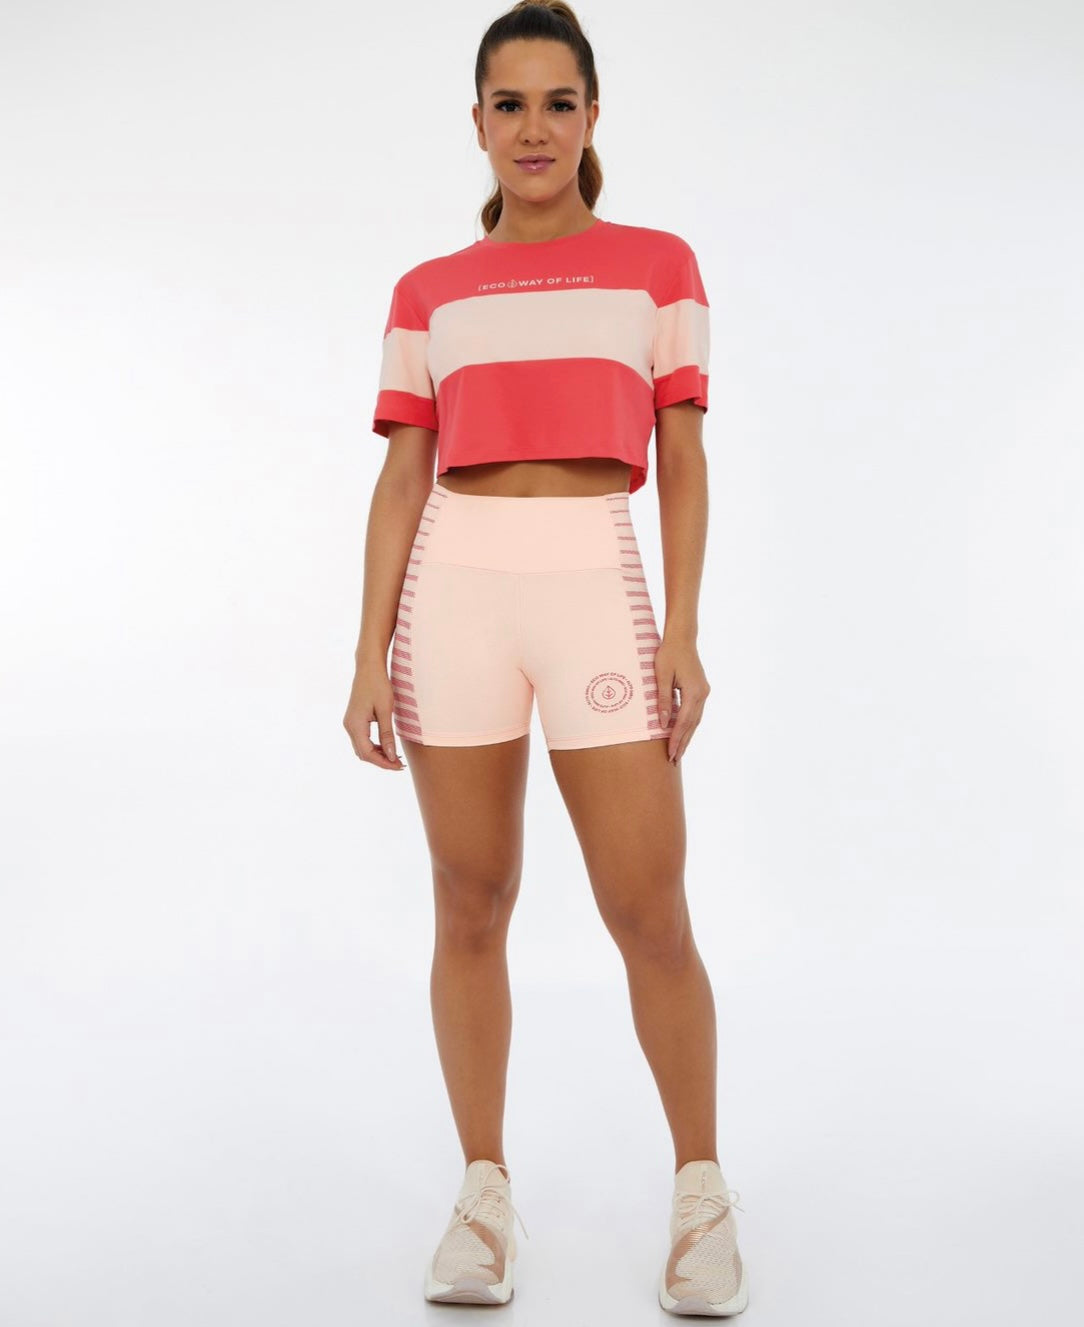 Shorts with Stripes Alto Giro